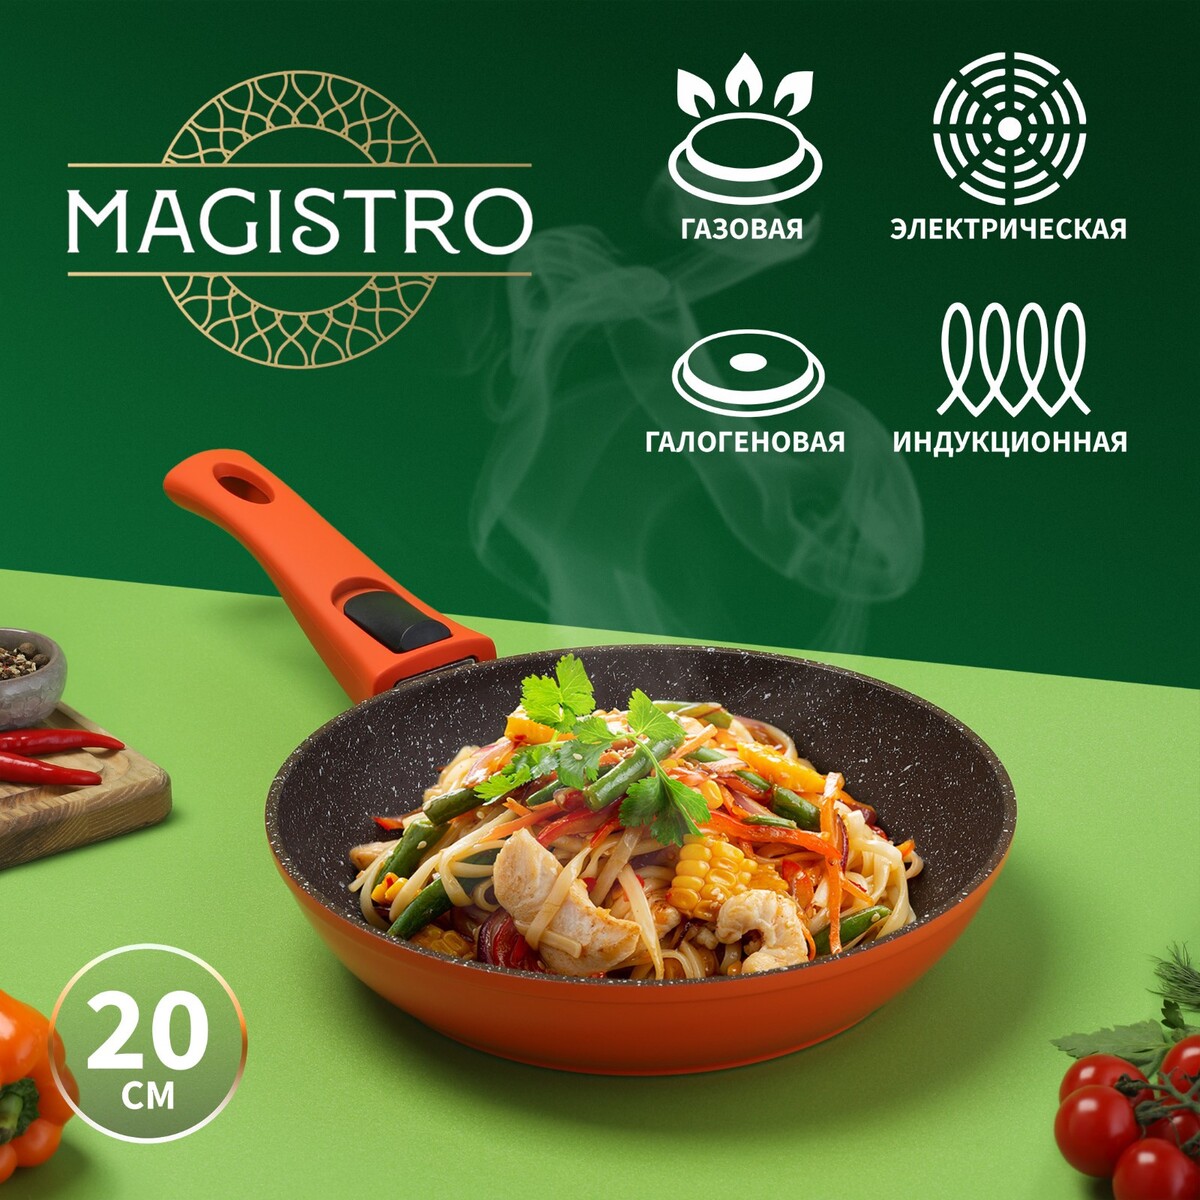 Сковорода magistro terra, d=20 см, съемная ручка soft-touch, антипригарное покрытие, индукция, цвет оранжевый